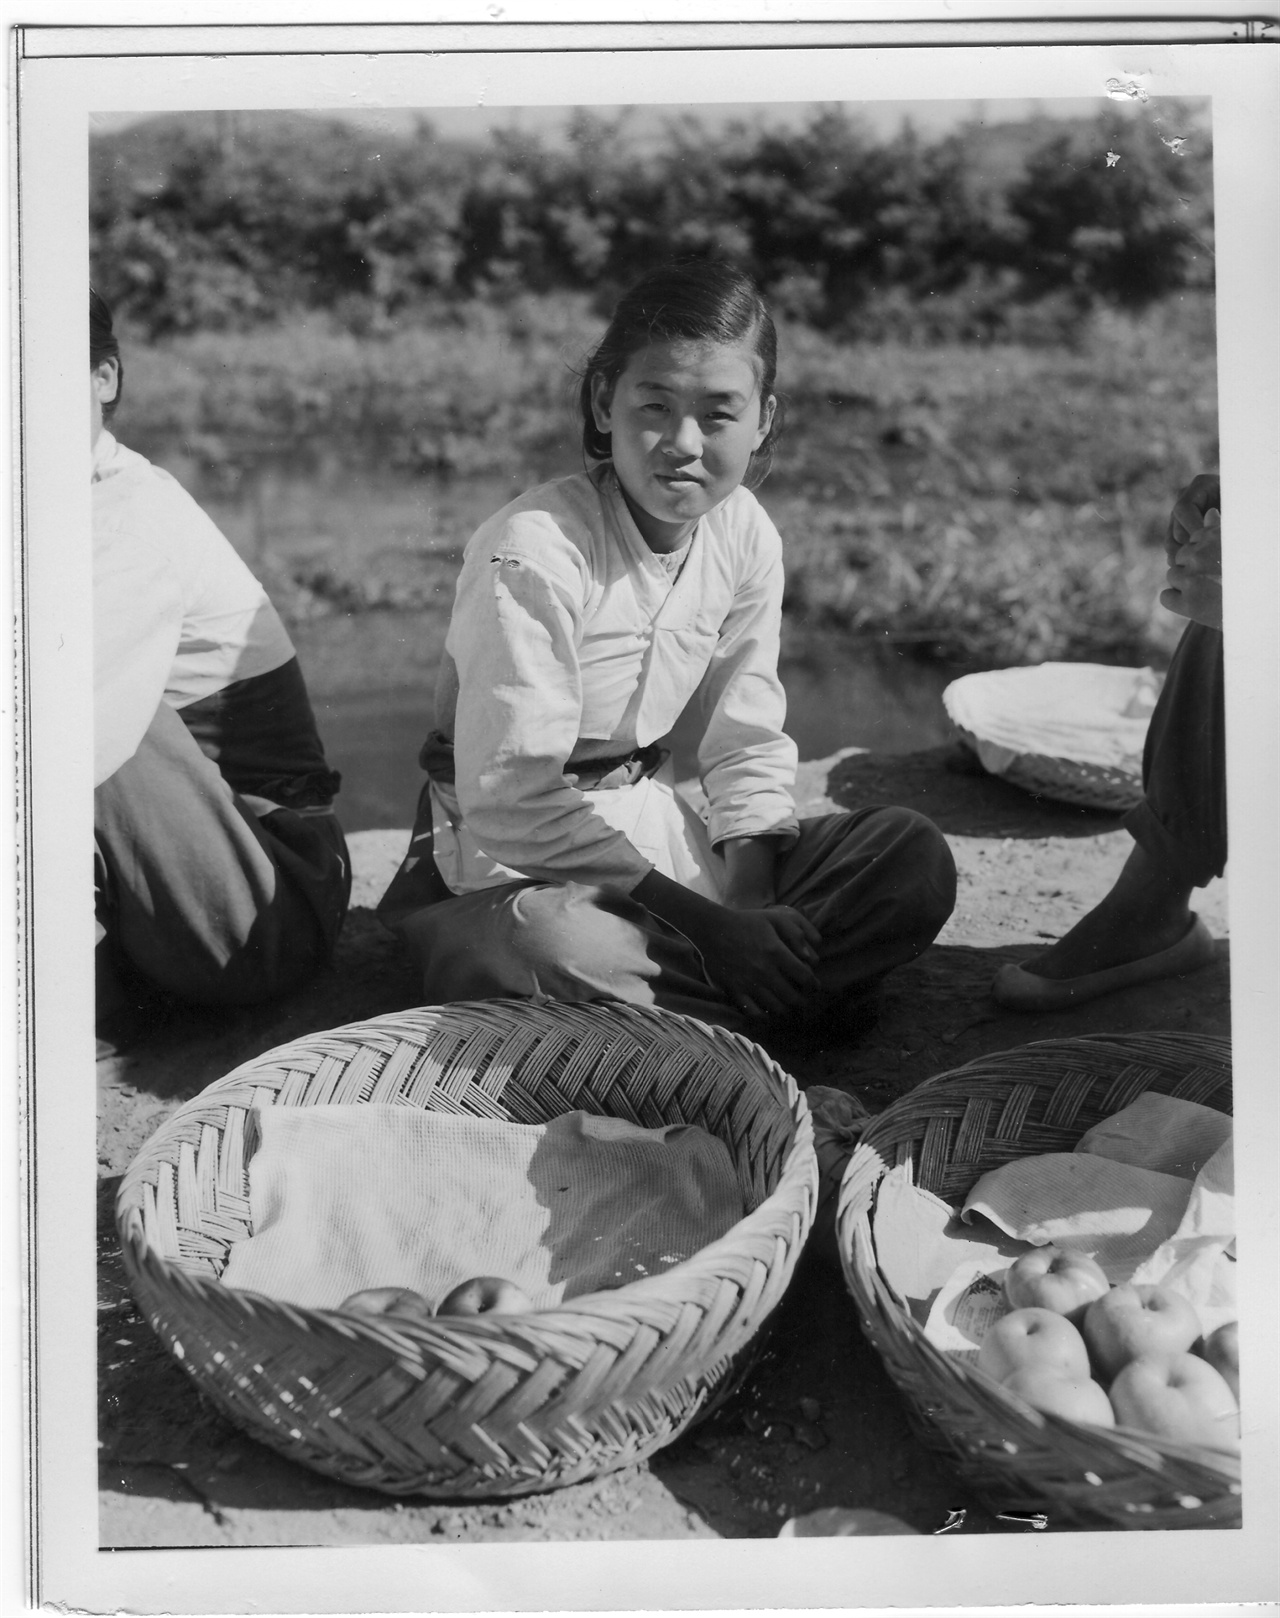 1952.10. 2. 문산, 한 여인이 노점에서 과일을 팔고 있다.